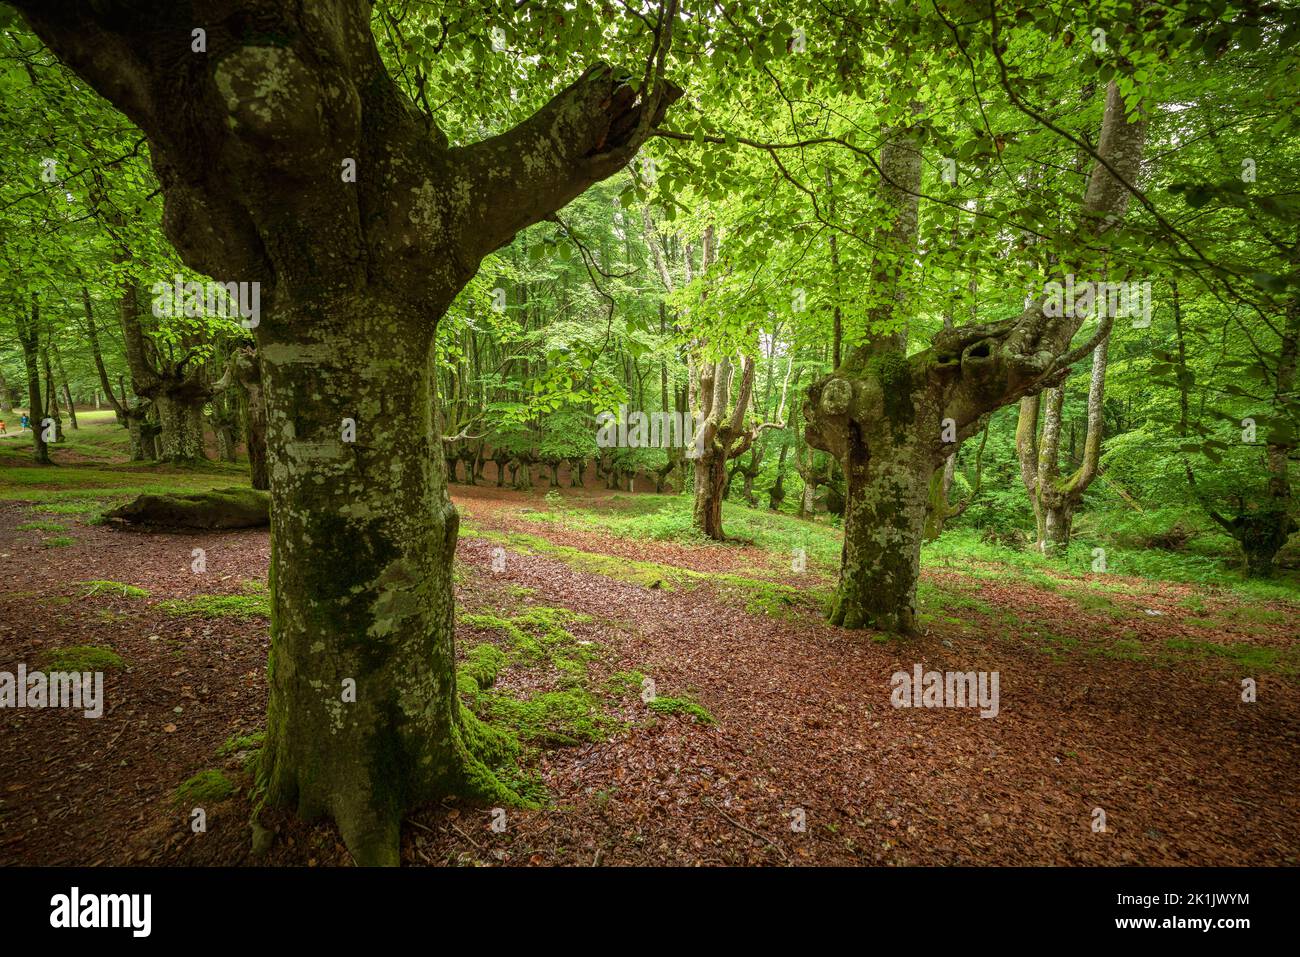 Paysage forêt de hêtre à feuilles dans le Parc naturel d'Urkiola, pays Basque, Espagne Banque D'Images